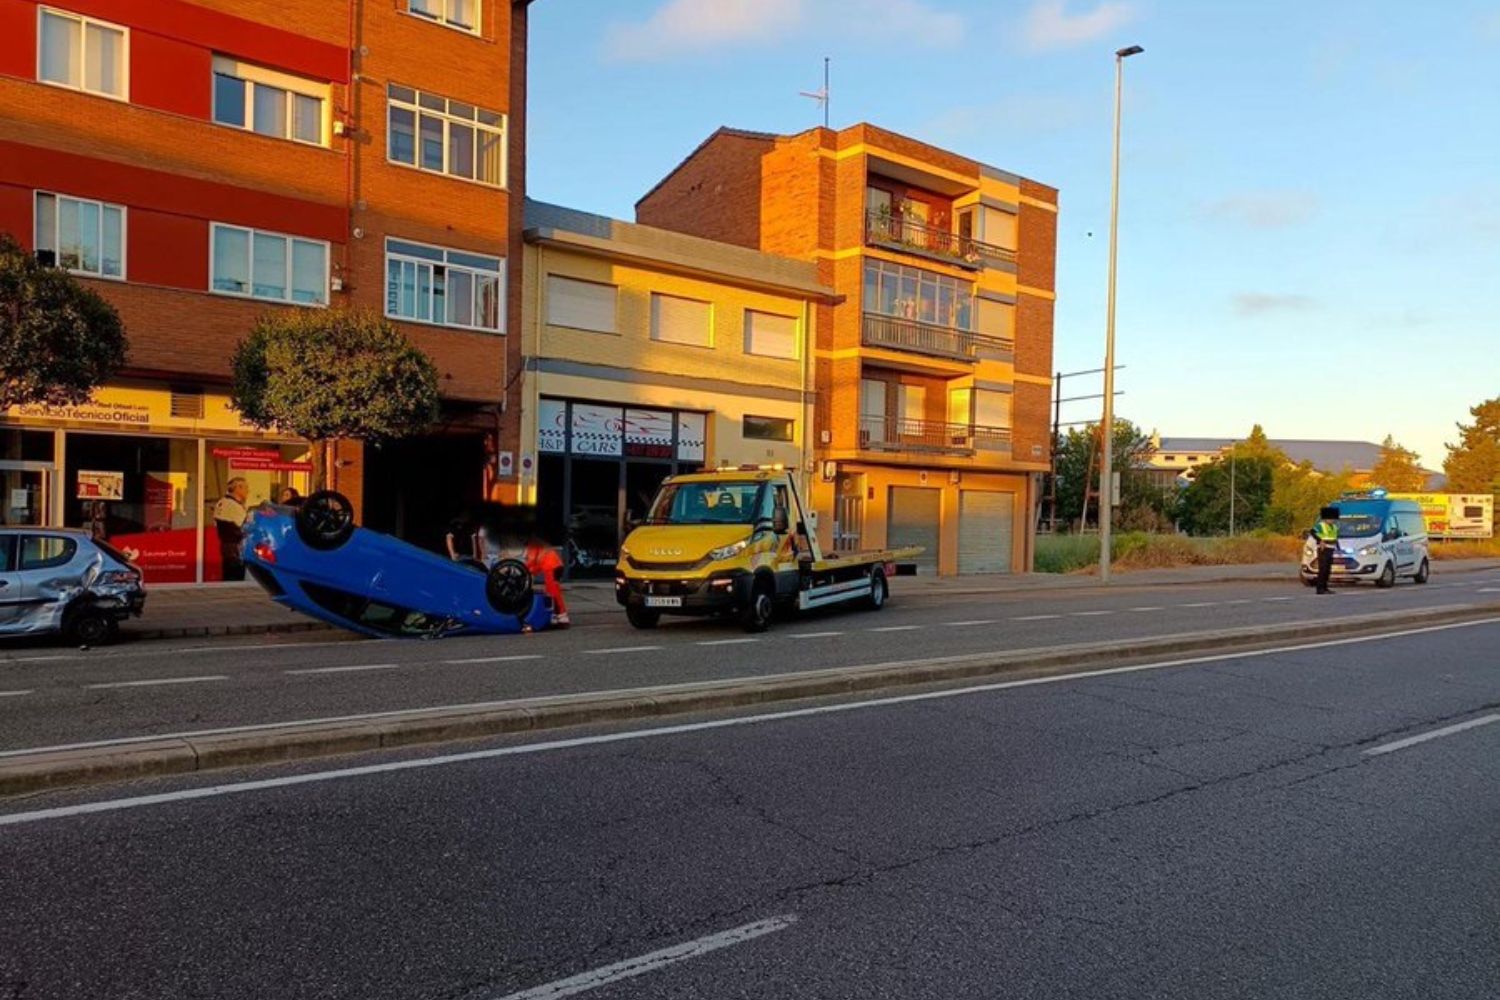 Un turismo vuelca en la Avenida de Portugal en León tras colisionar con otros dos vehículos: el conductor da positivo en alcoholemia